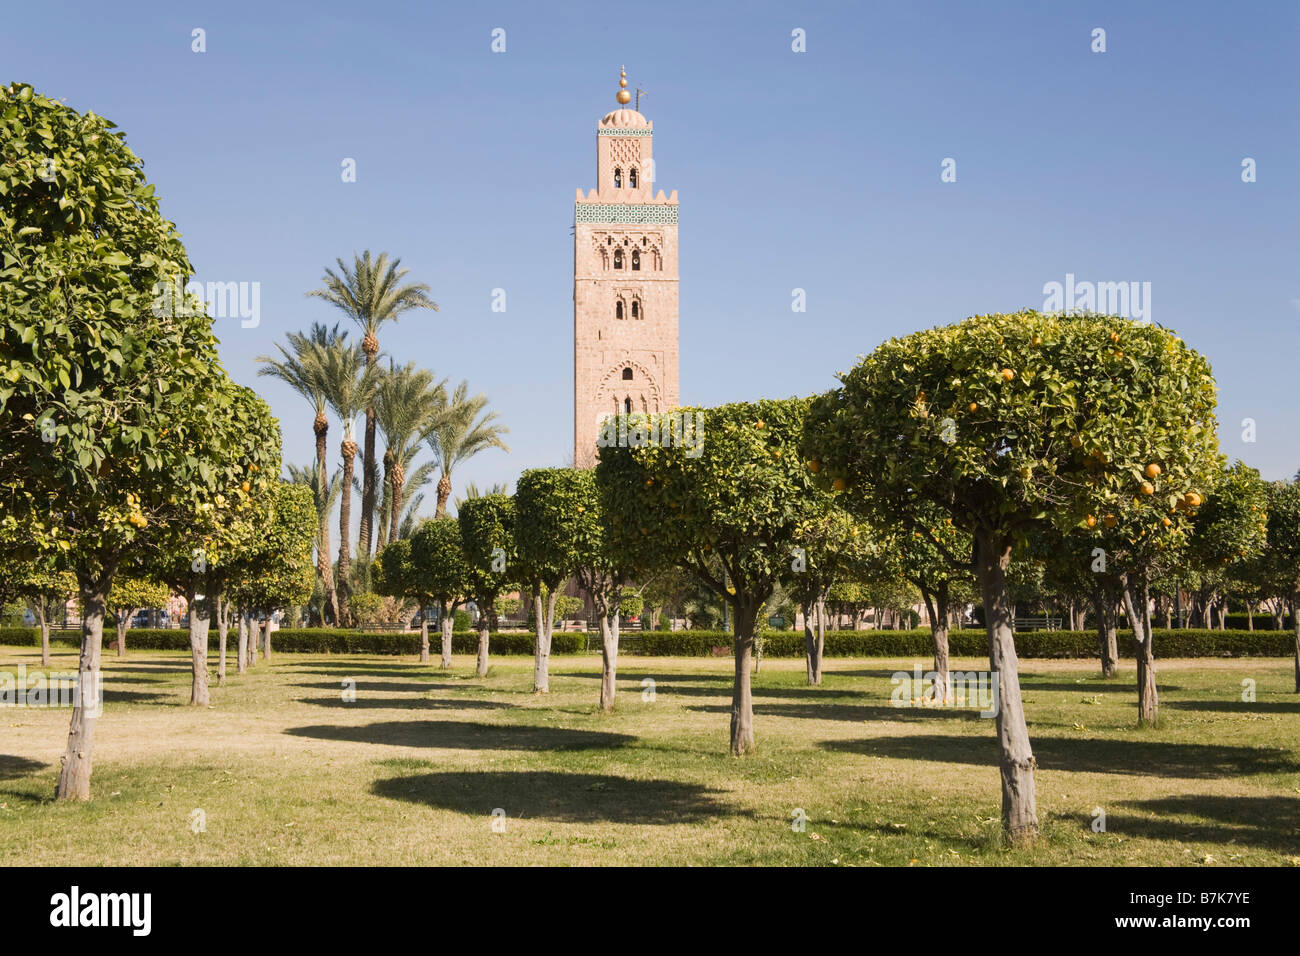 Marrakesch Marokko Nordafrika Ansicht der Koutoubia-Moschee Minarett durch Baumreihe im Orangenhain Gärten Stockfoto